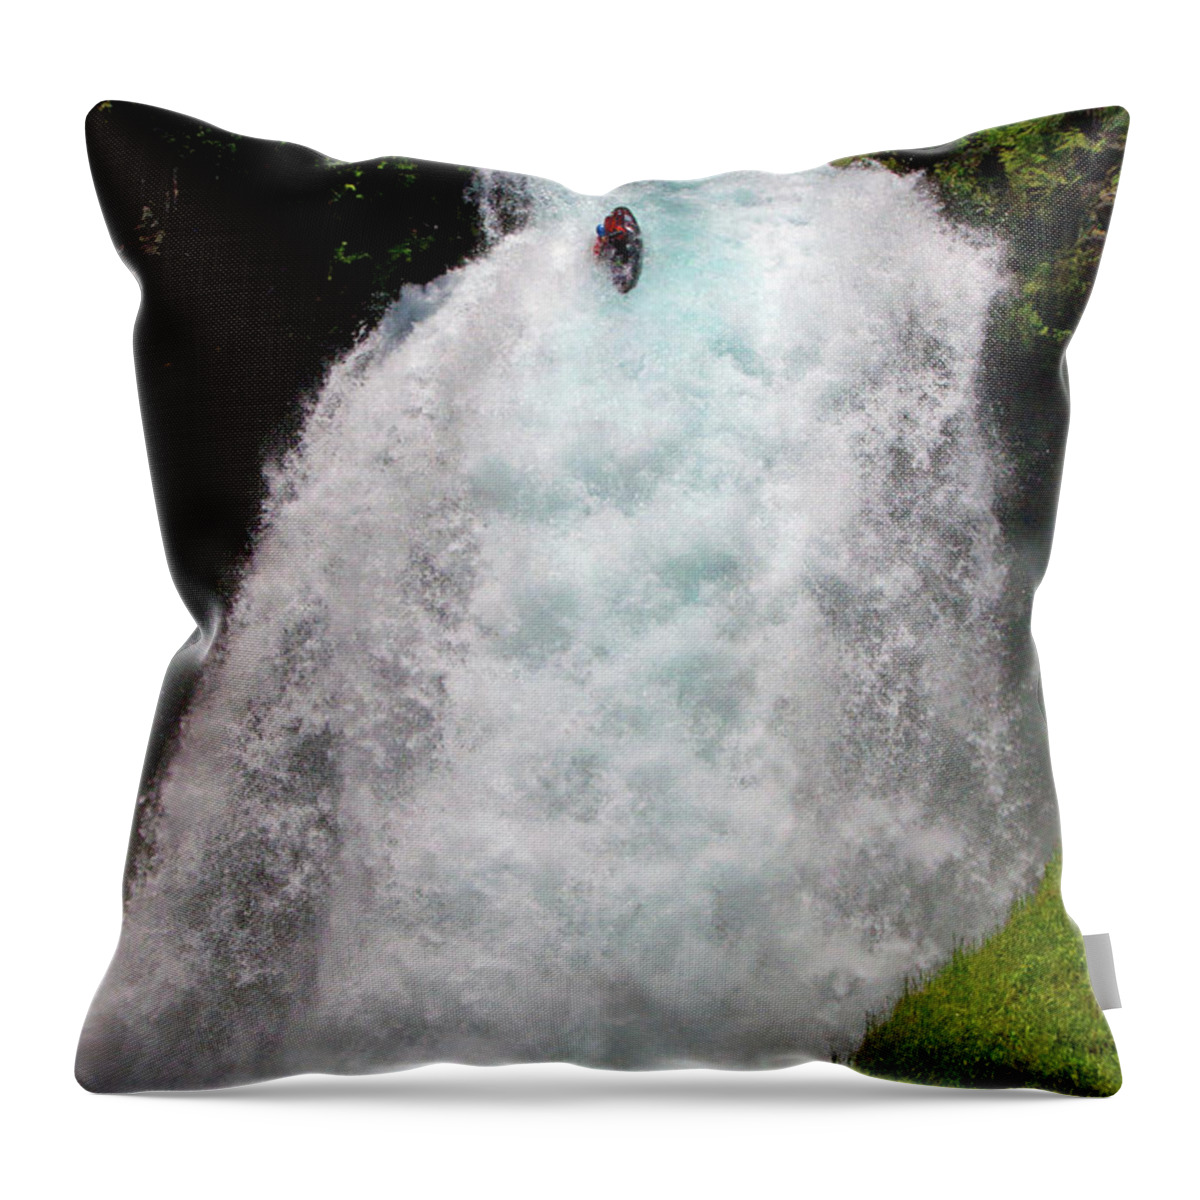 Sahalie Falls Throw Pillow featuring the photograph Kayaking Sahalie Falls 1 of 3 by Merrill Beck